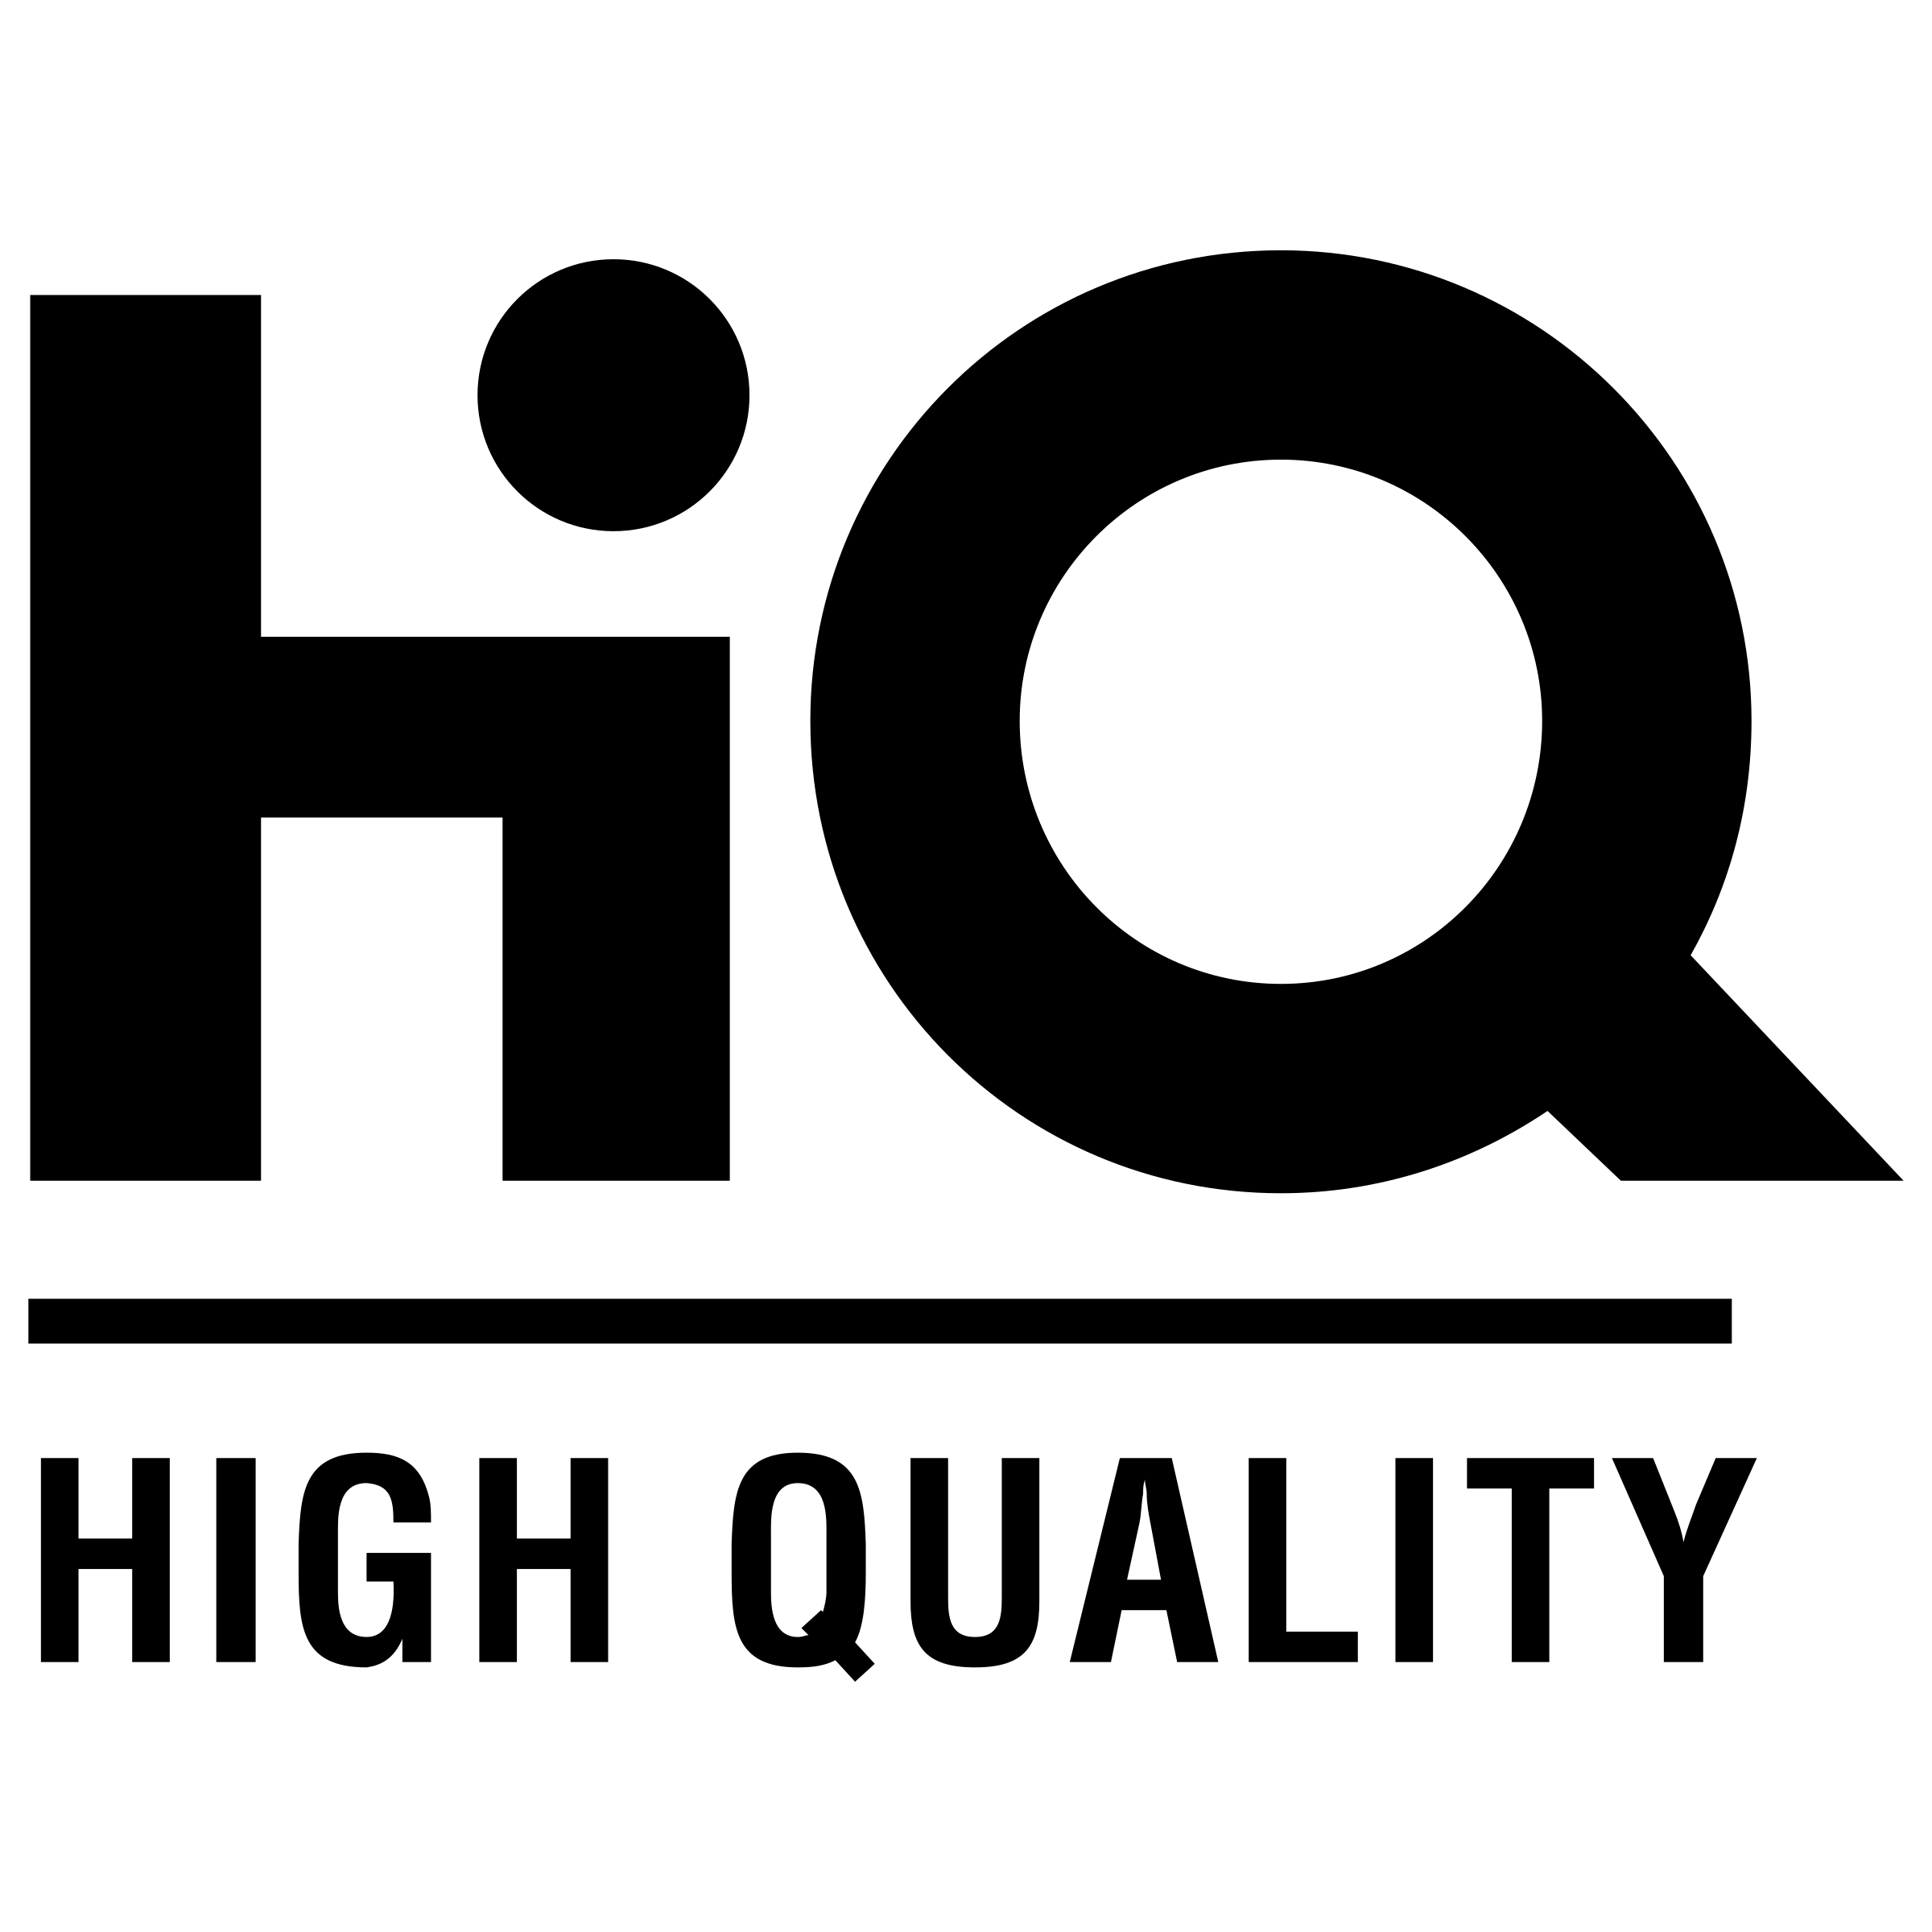 High Quality Logo - High Quality Logo PNG Transparent & SVG Vector - Freebie Supply